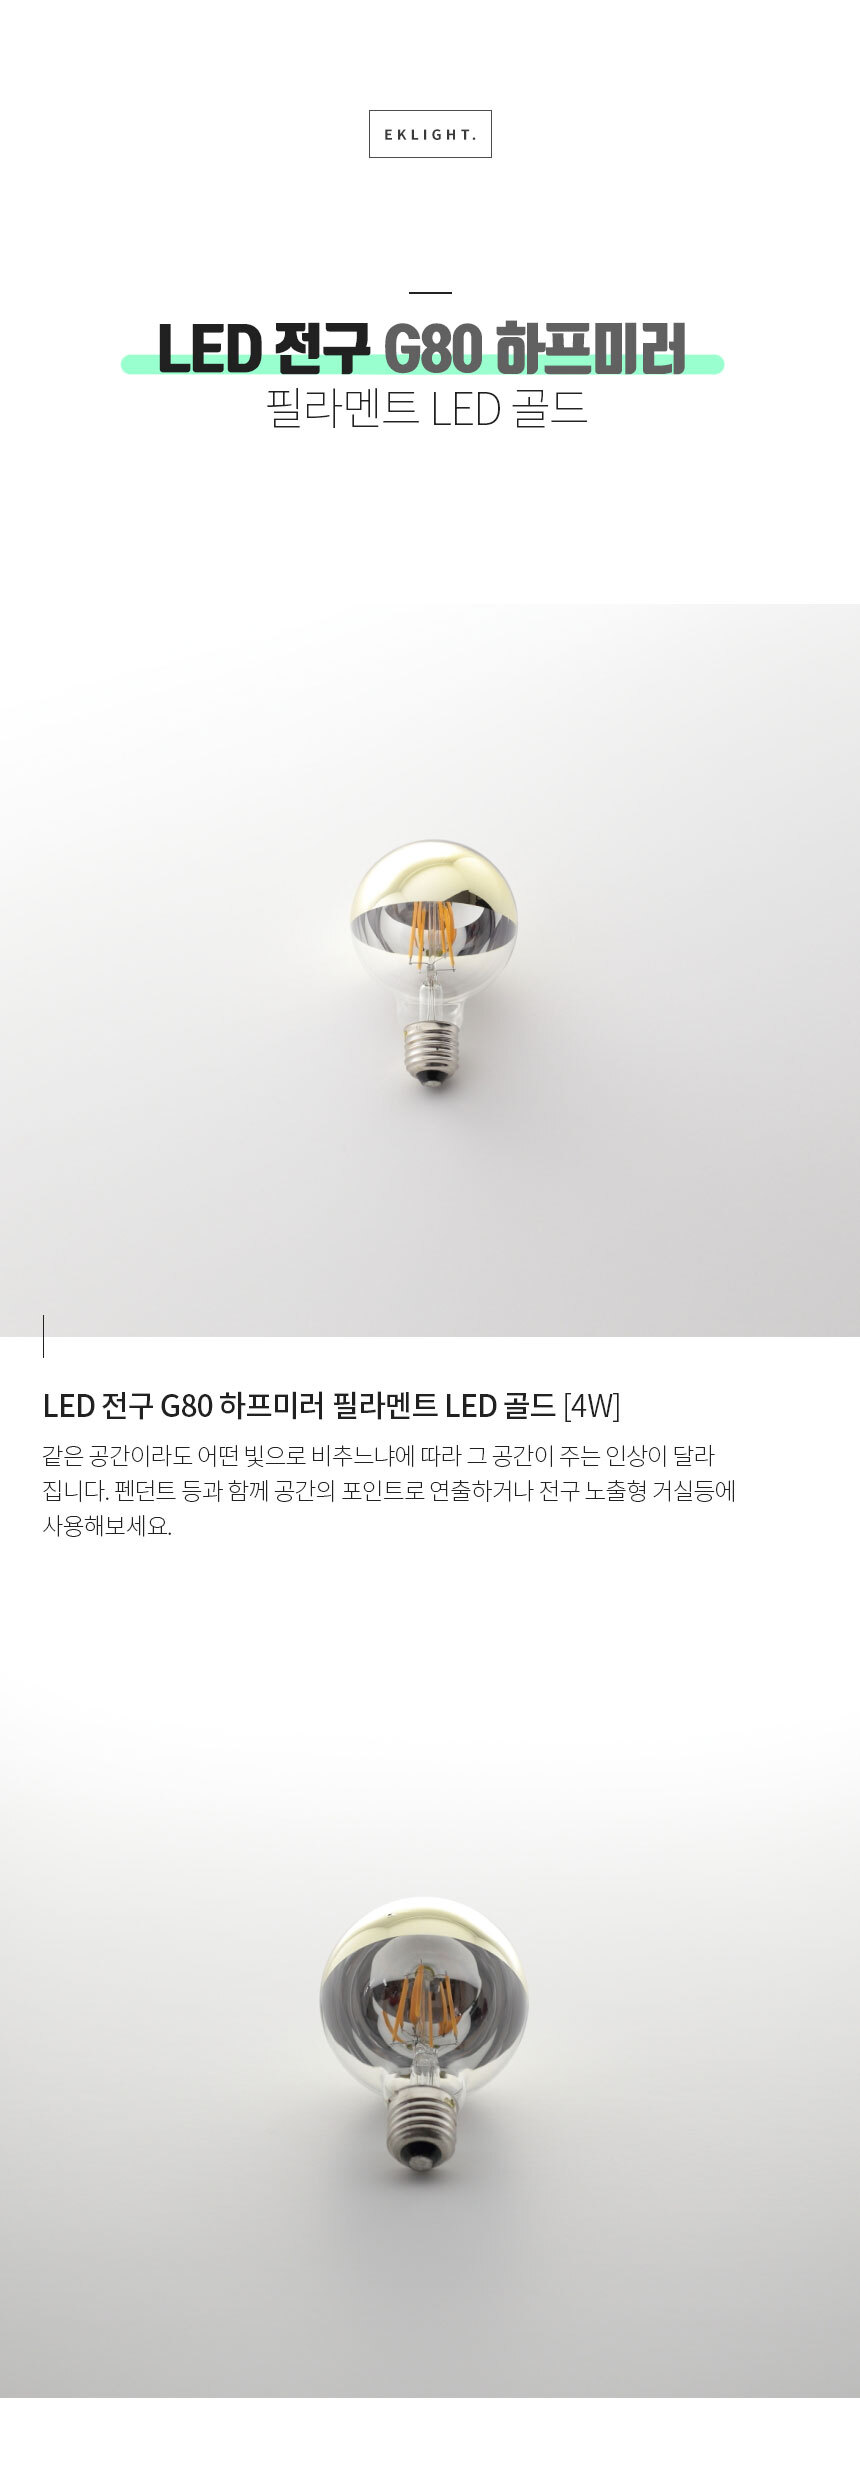 LED 전구 G80 하프미러
 필라멘트 LED LED 전구 G80 하프미러 필라멘트 LED [4W] 같은 공간이라도 어떤 빛으로 비추느냐에 따라 그 공간이 주는 인상이 달라
집니다. 펜던트 등과 함께 공간의 포인트로 연출하거나 전구 노출형 거실등에
사용해보세요.